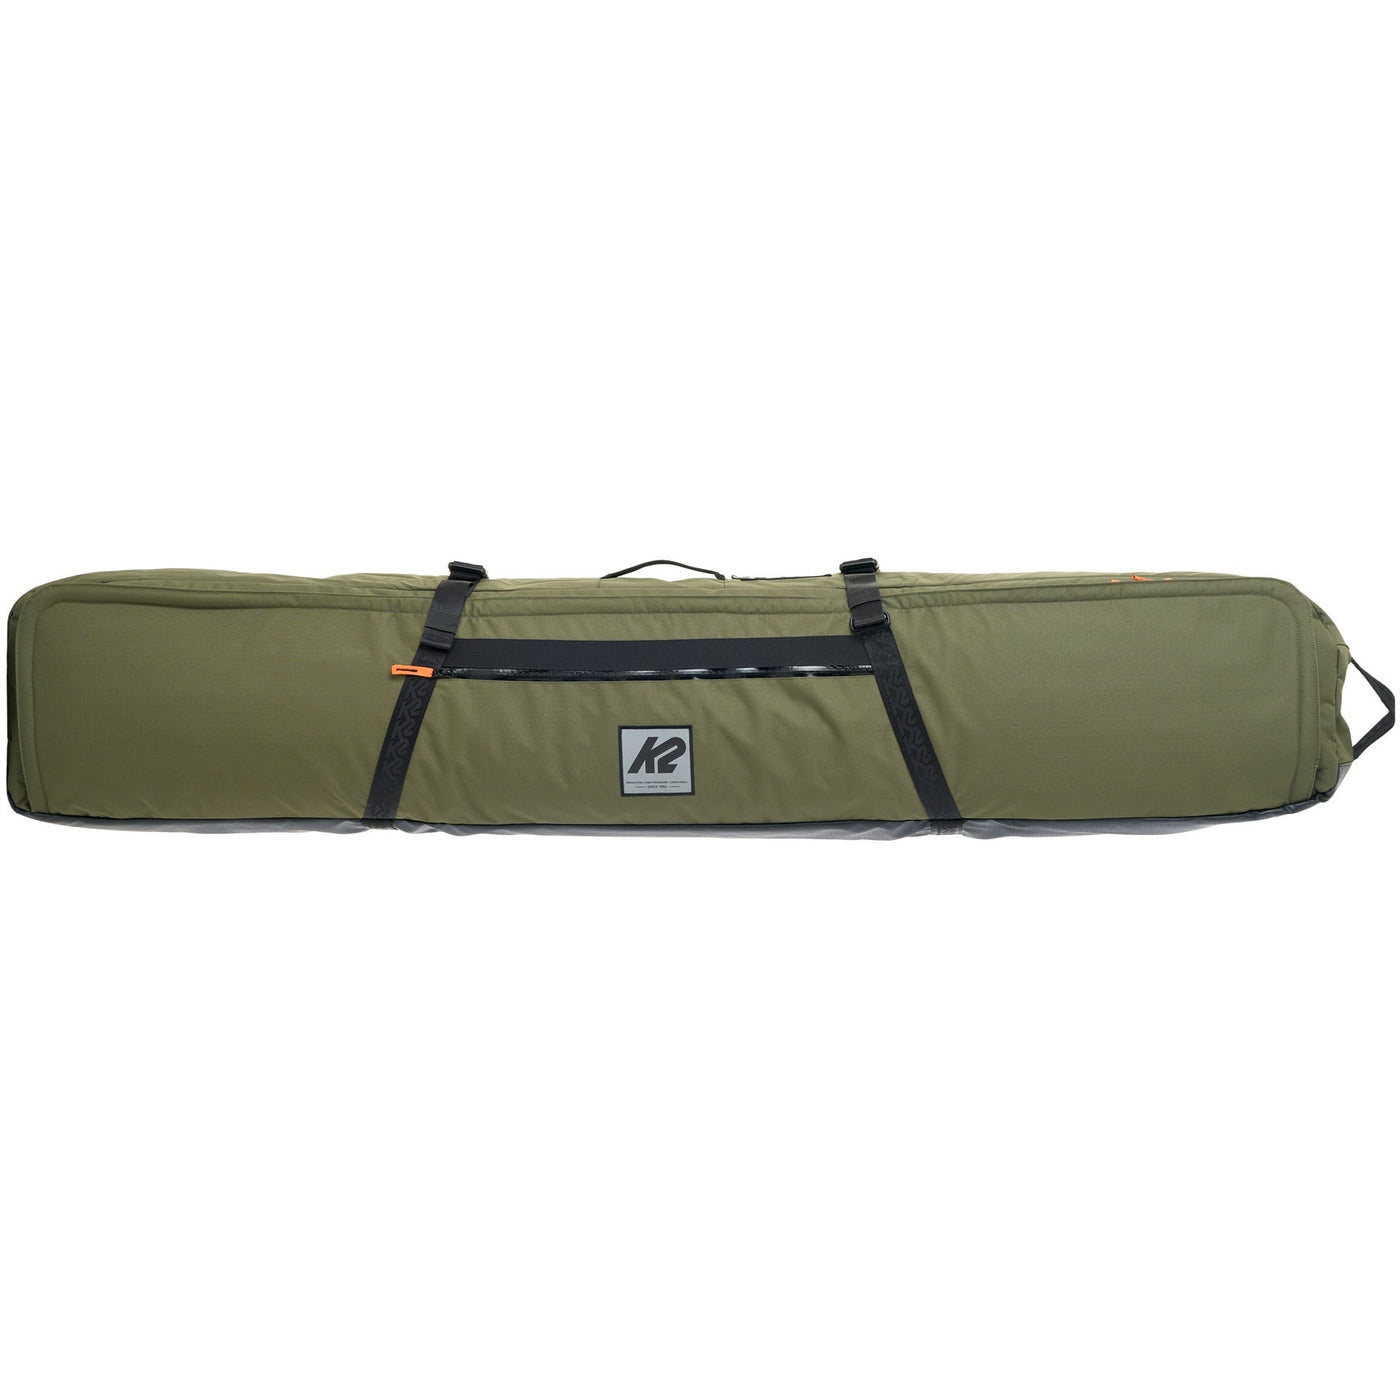 K2 Padded Board Bag